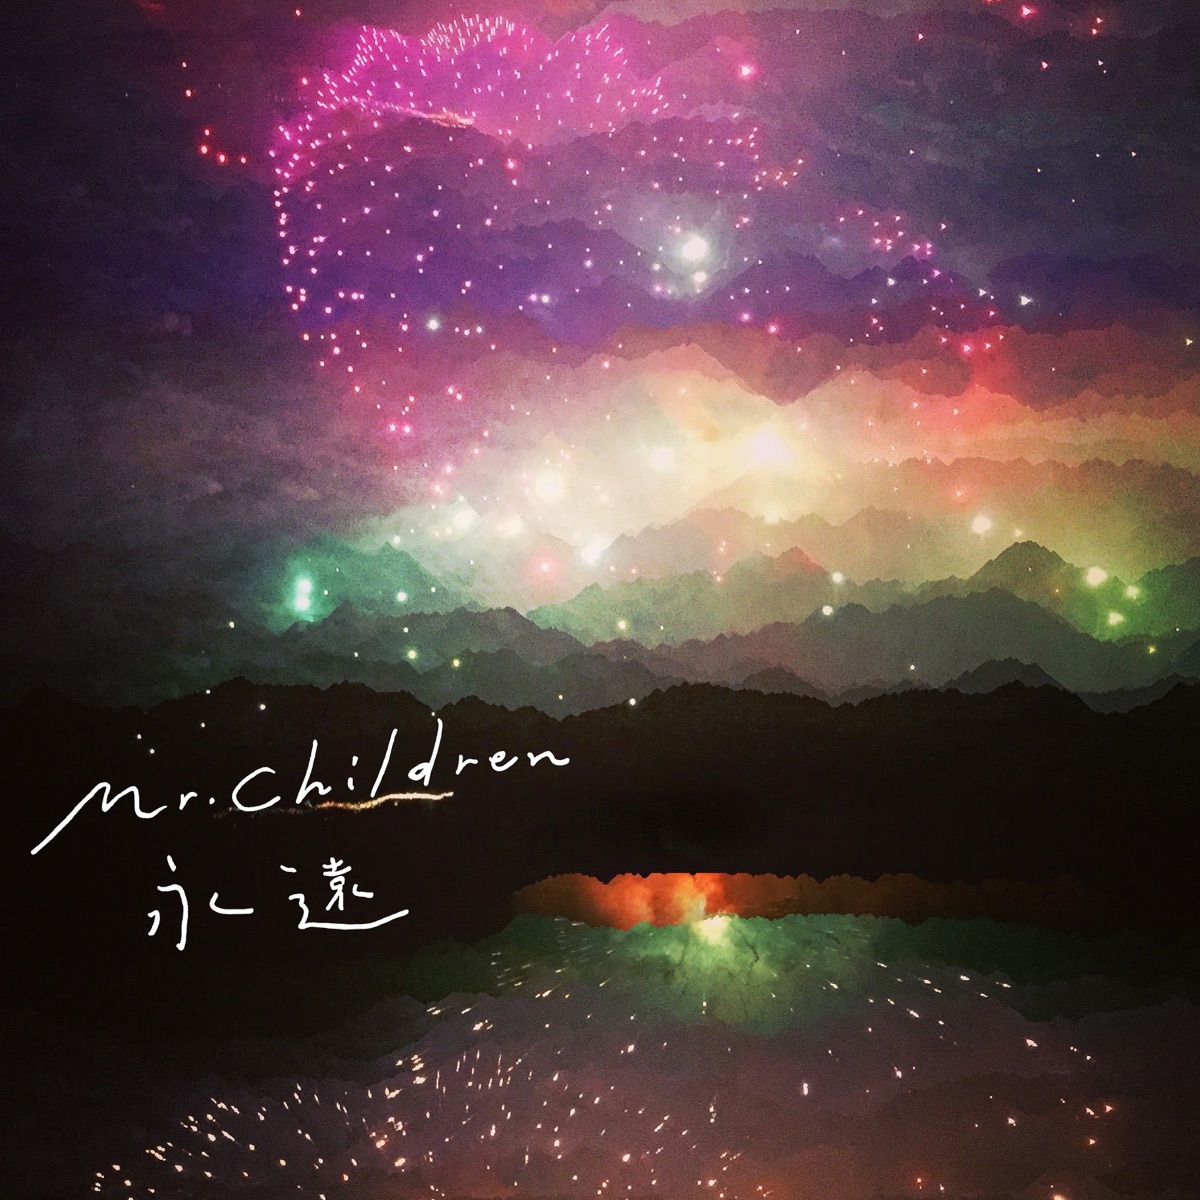 Cover art for『Mr.Children - Eien』from the release『Eien』